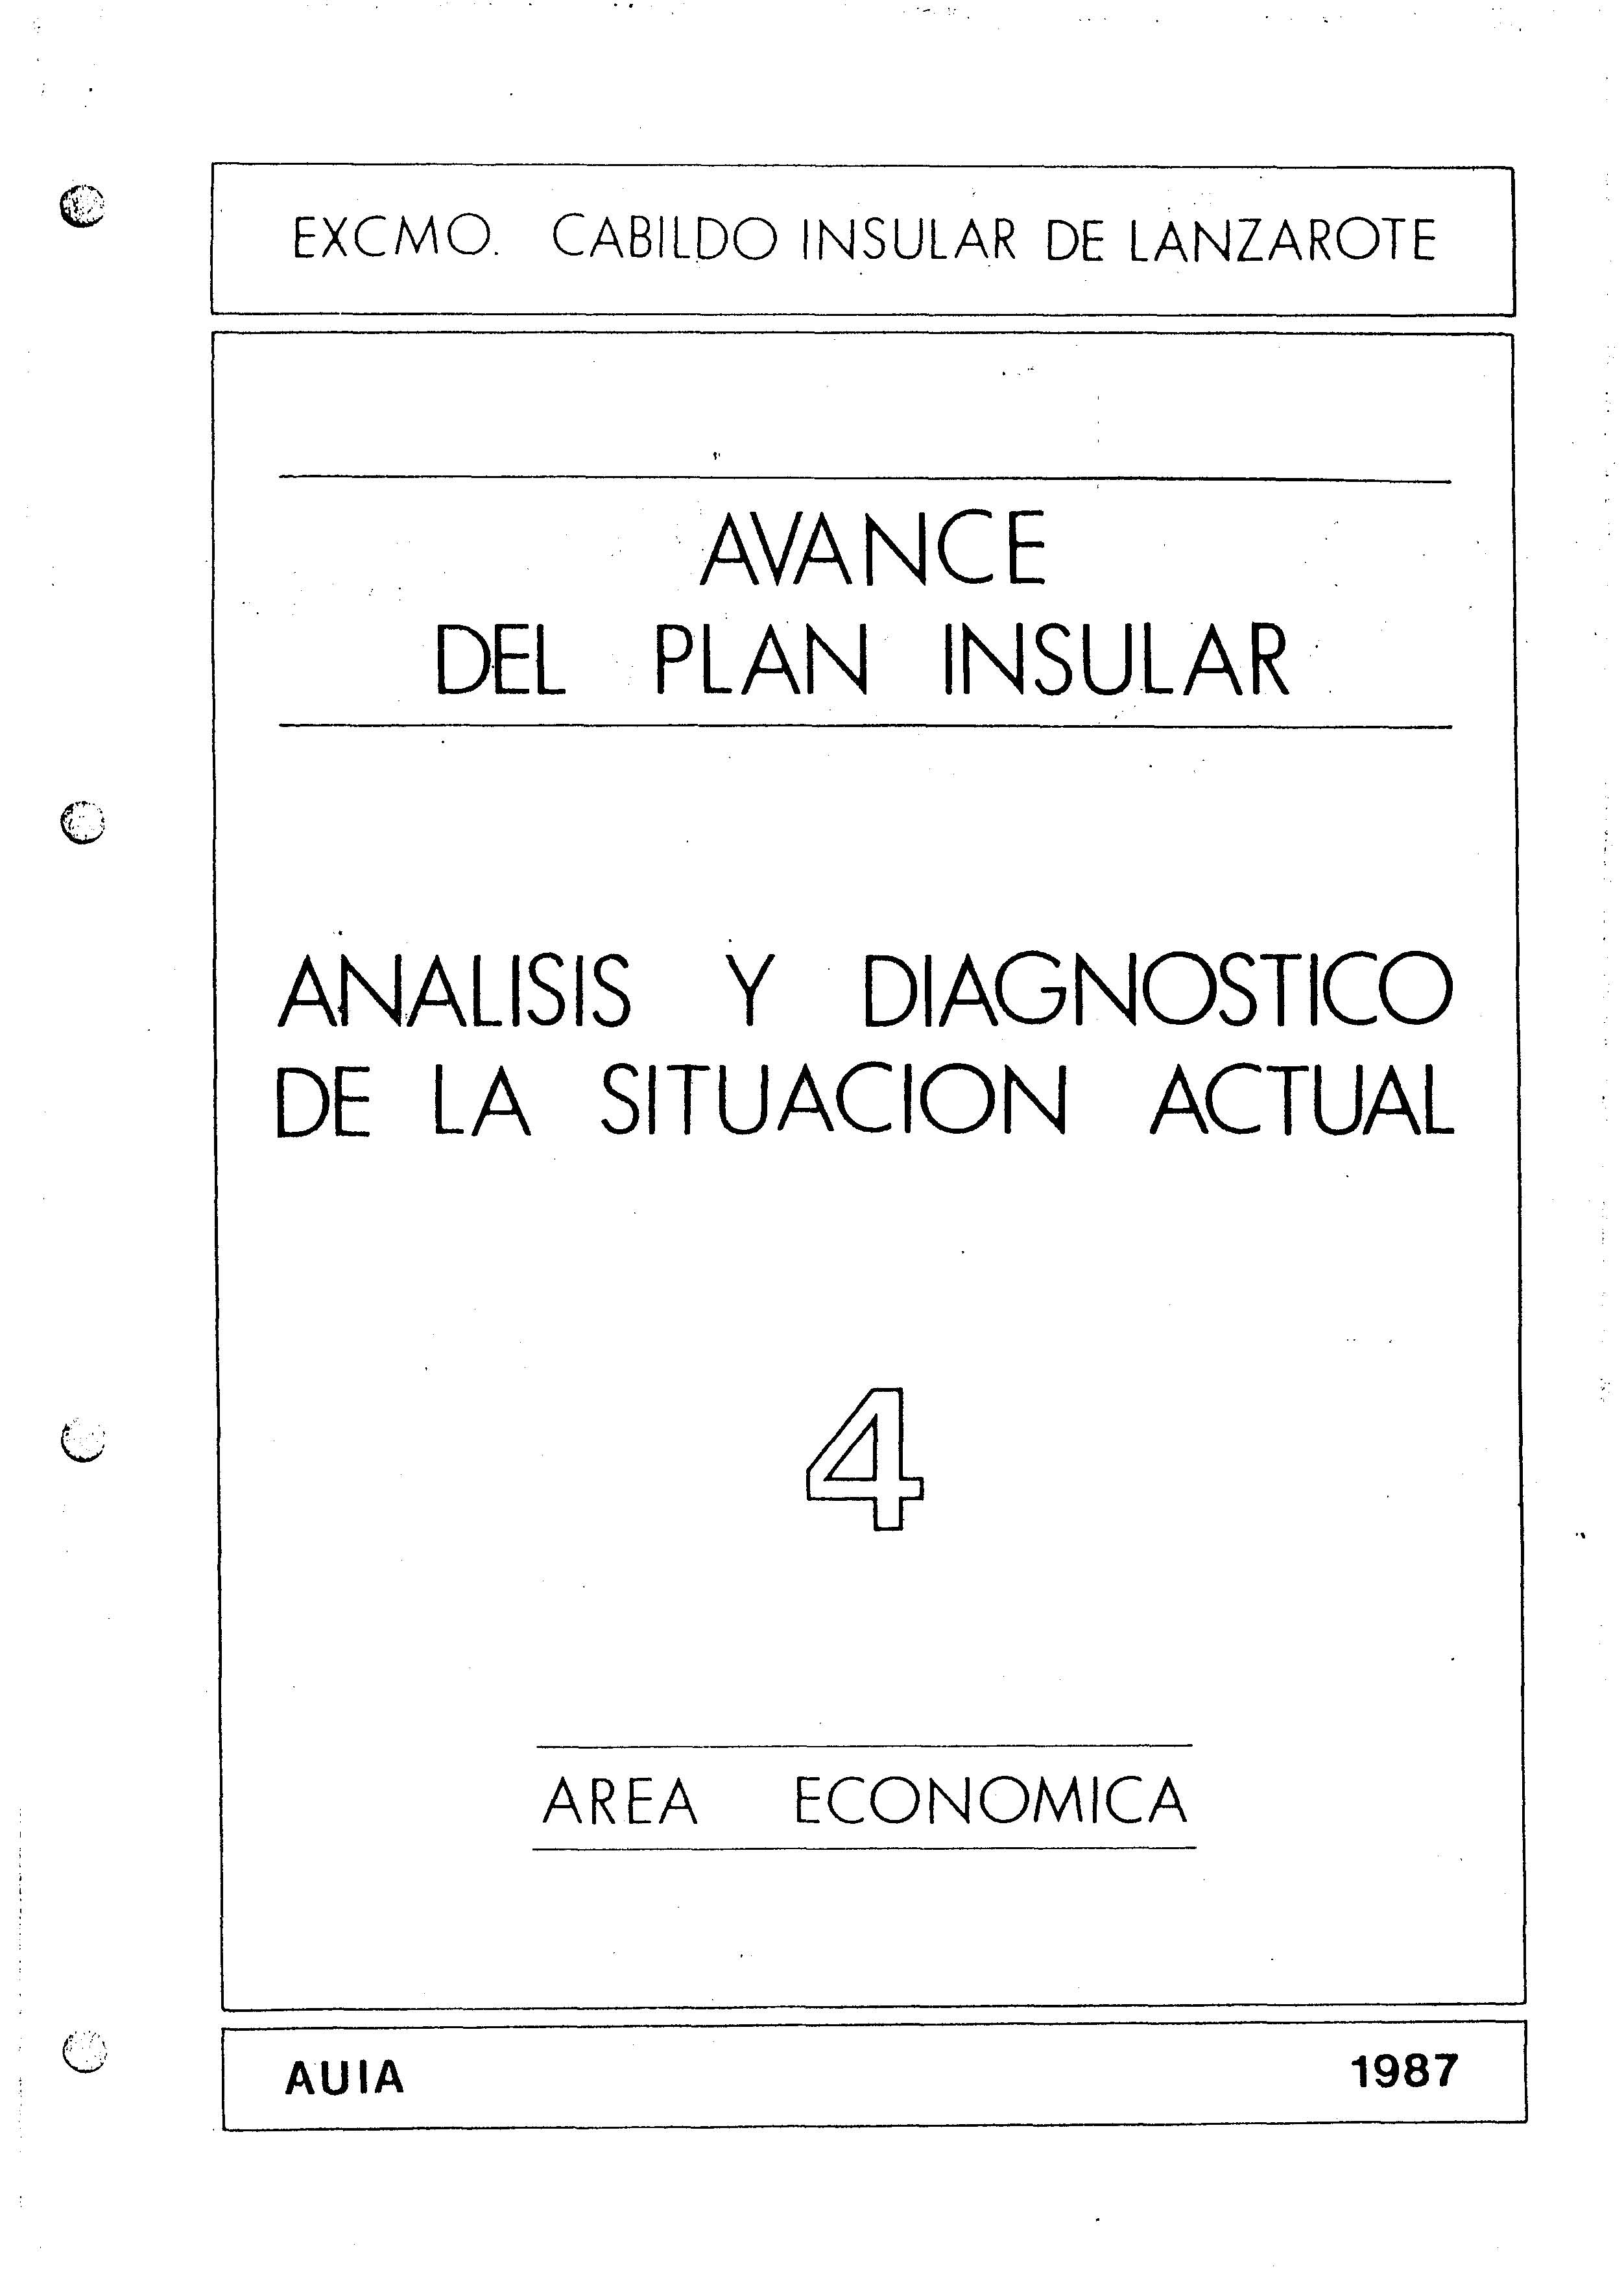 Tomo 4. Economía. Avance Plan Insular (1987)